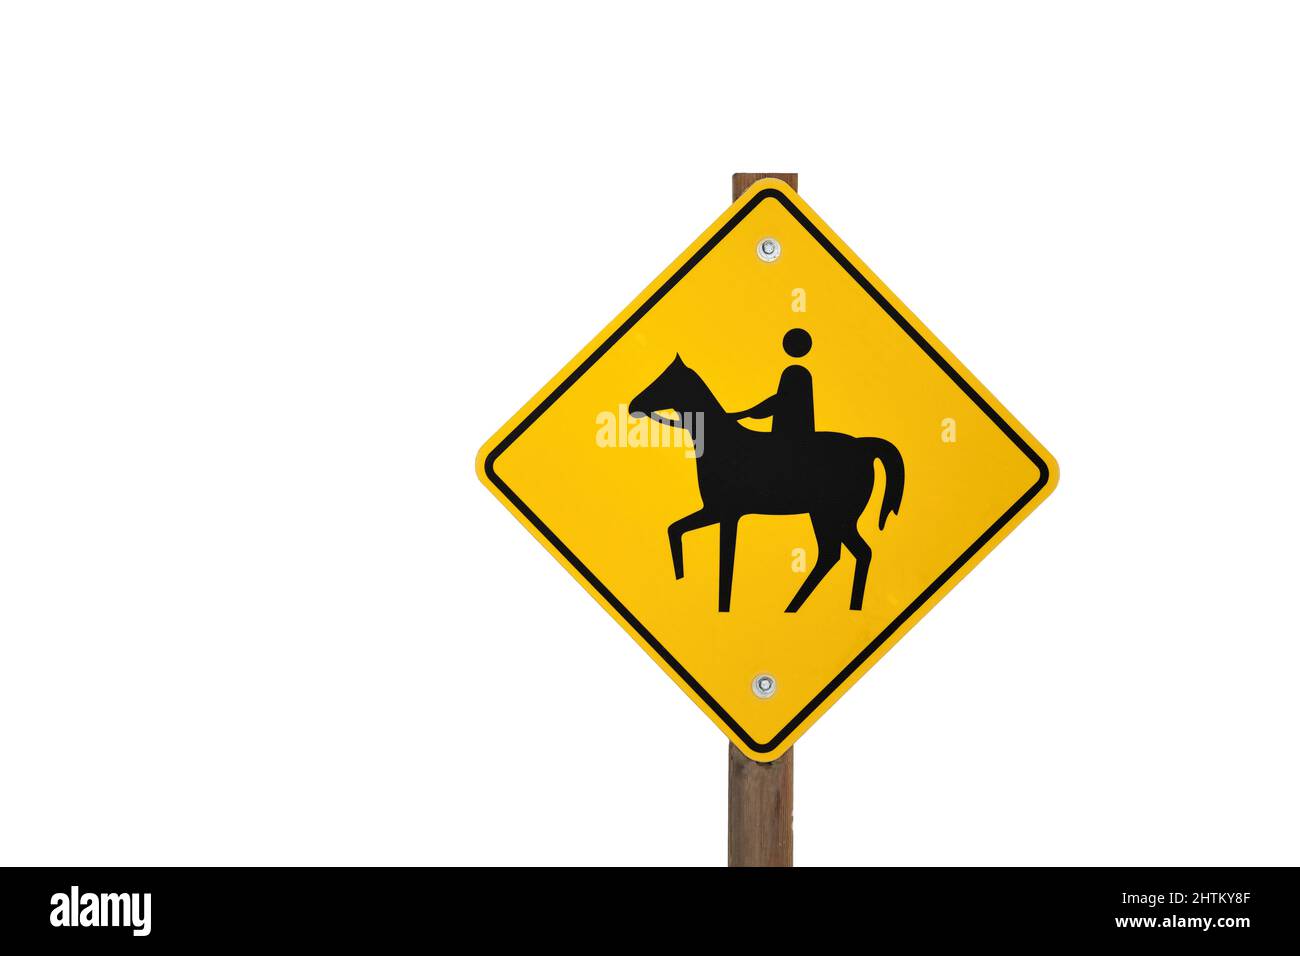 Avertissement jaune cheval Rider Riding Sign isolé contre un fond blanc Banque D'Images